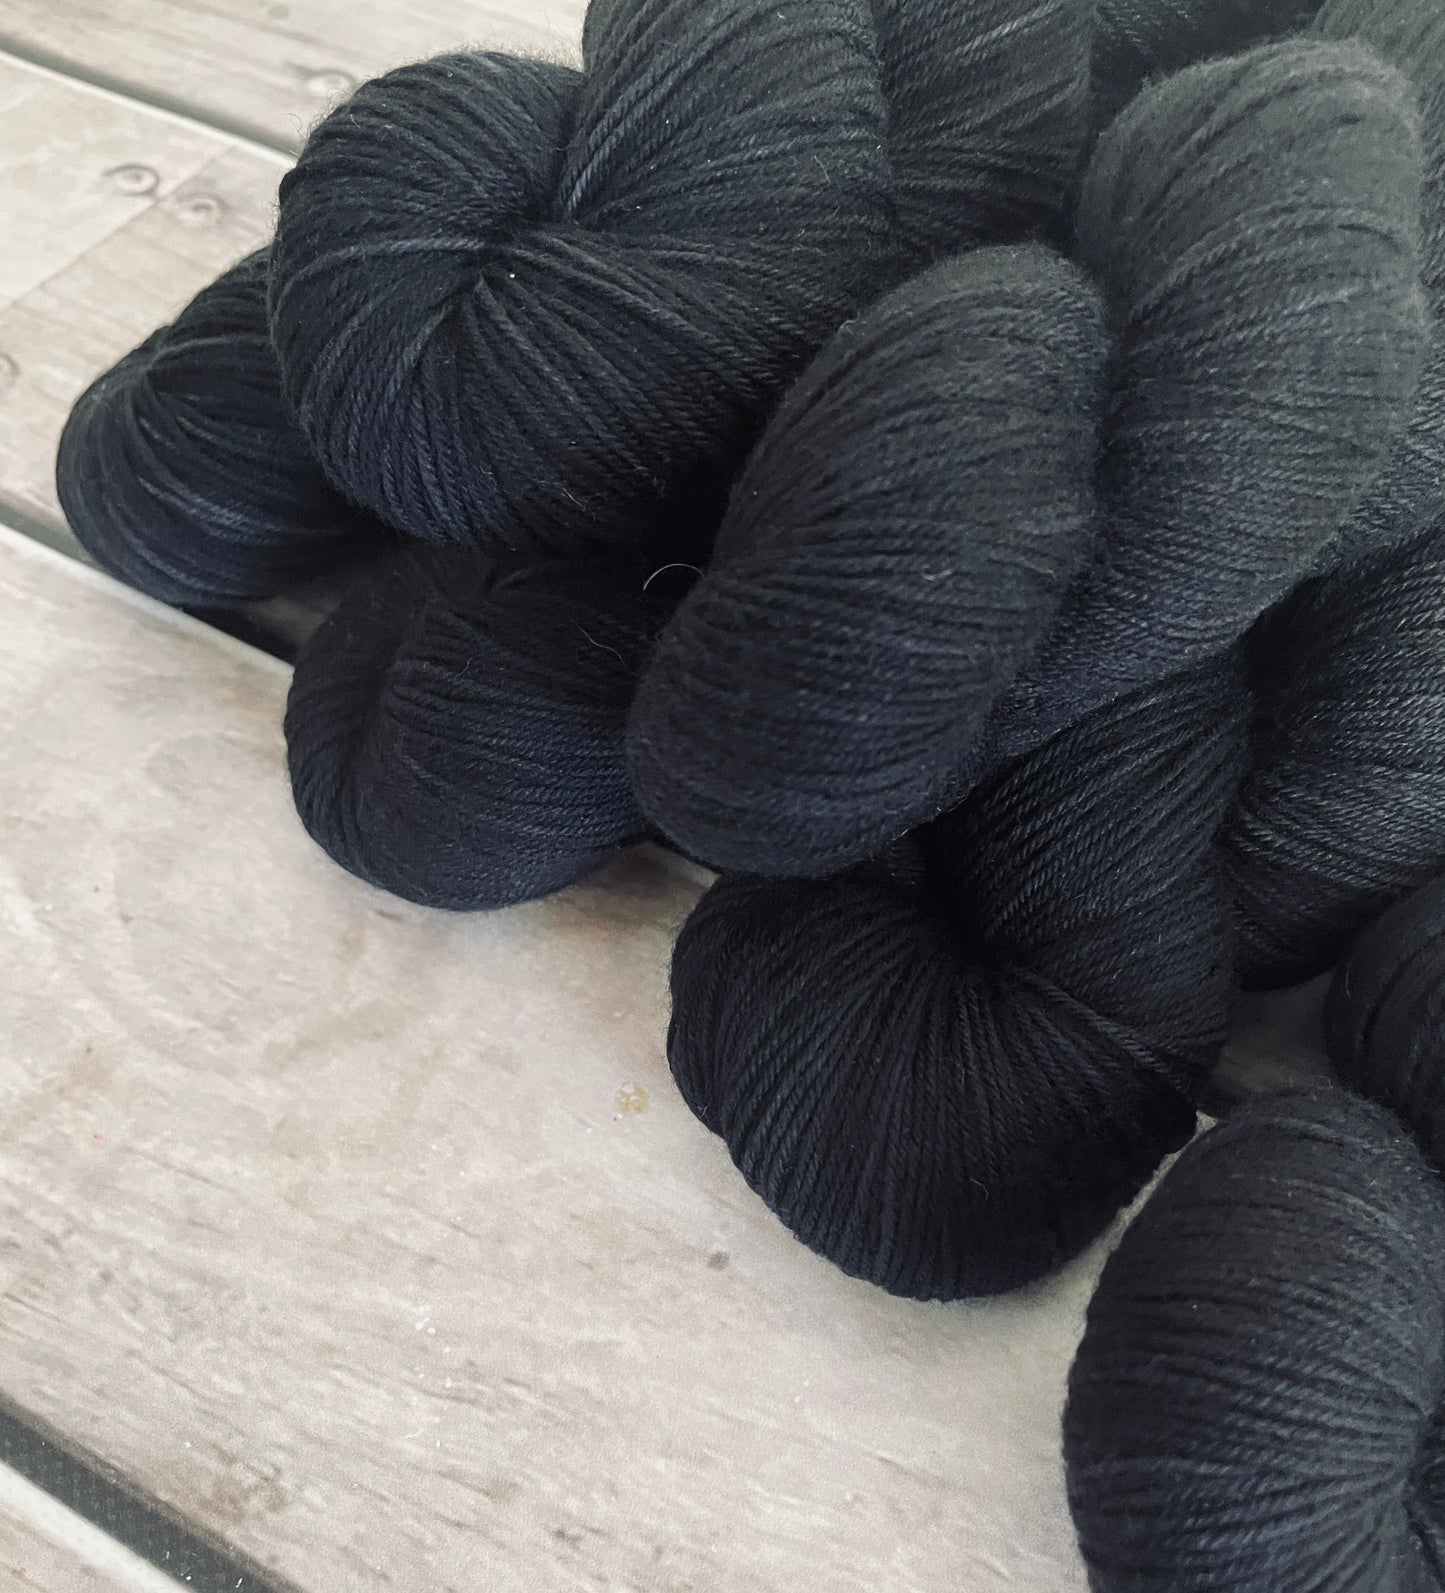 Raven - Darjeeling 4 ply sock yarn in merino and nylon